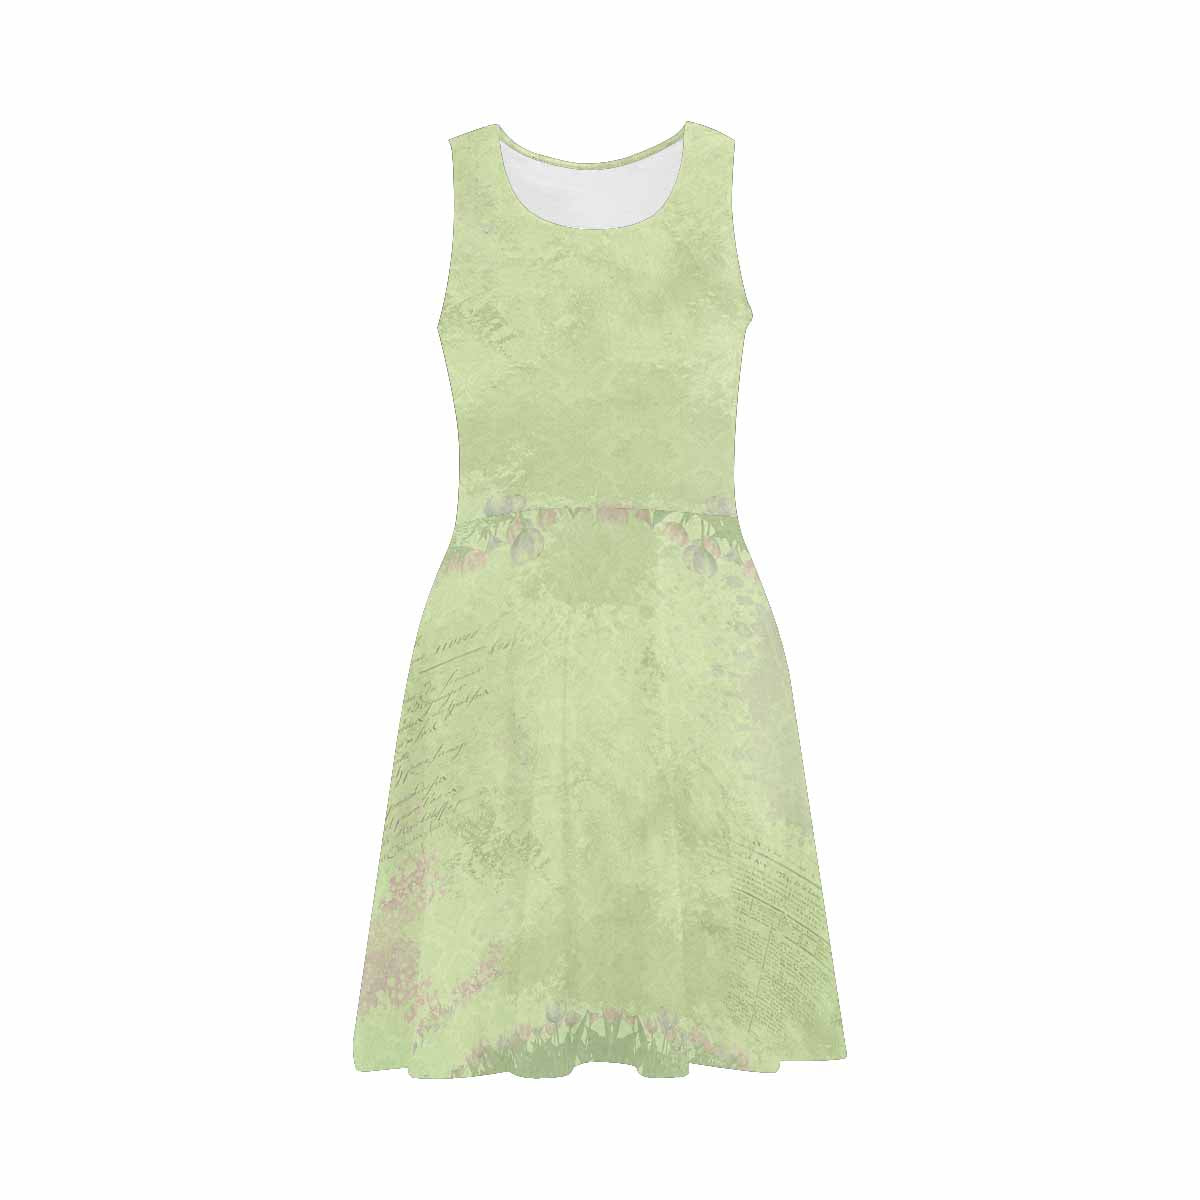 Antique General summer dress, MODEL 09534, design 56